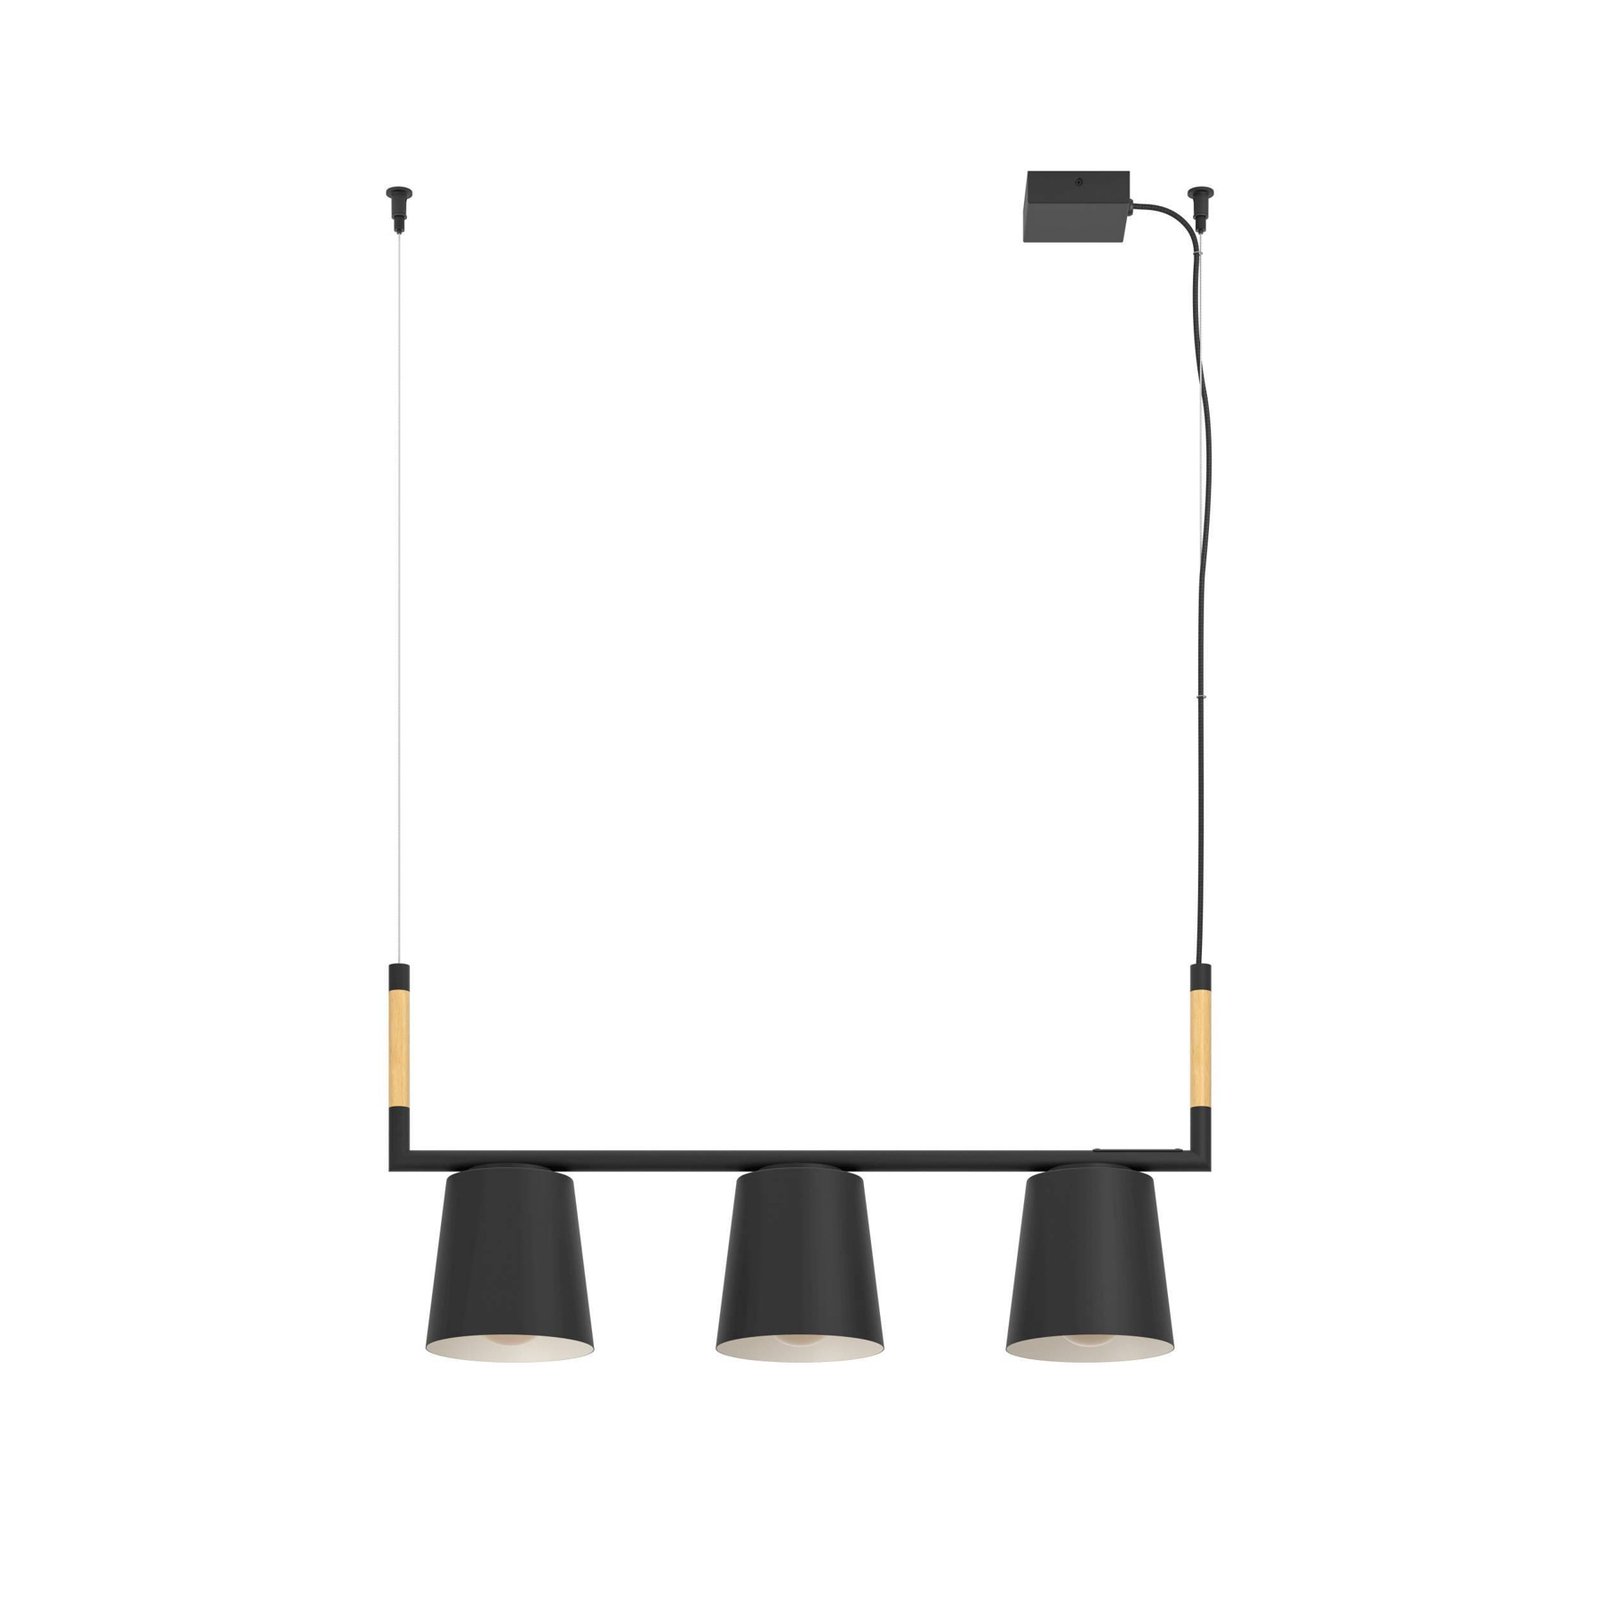 Lacey hänglampa, längd 78 cm, svart, 3 lampor, stål